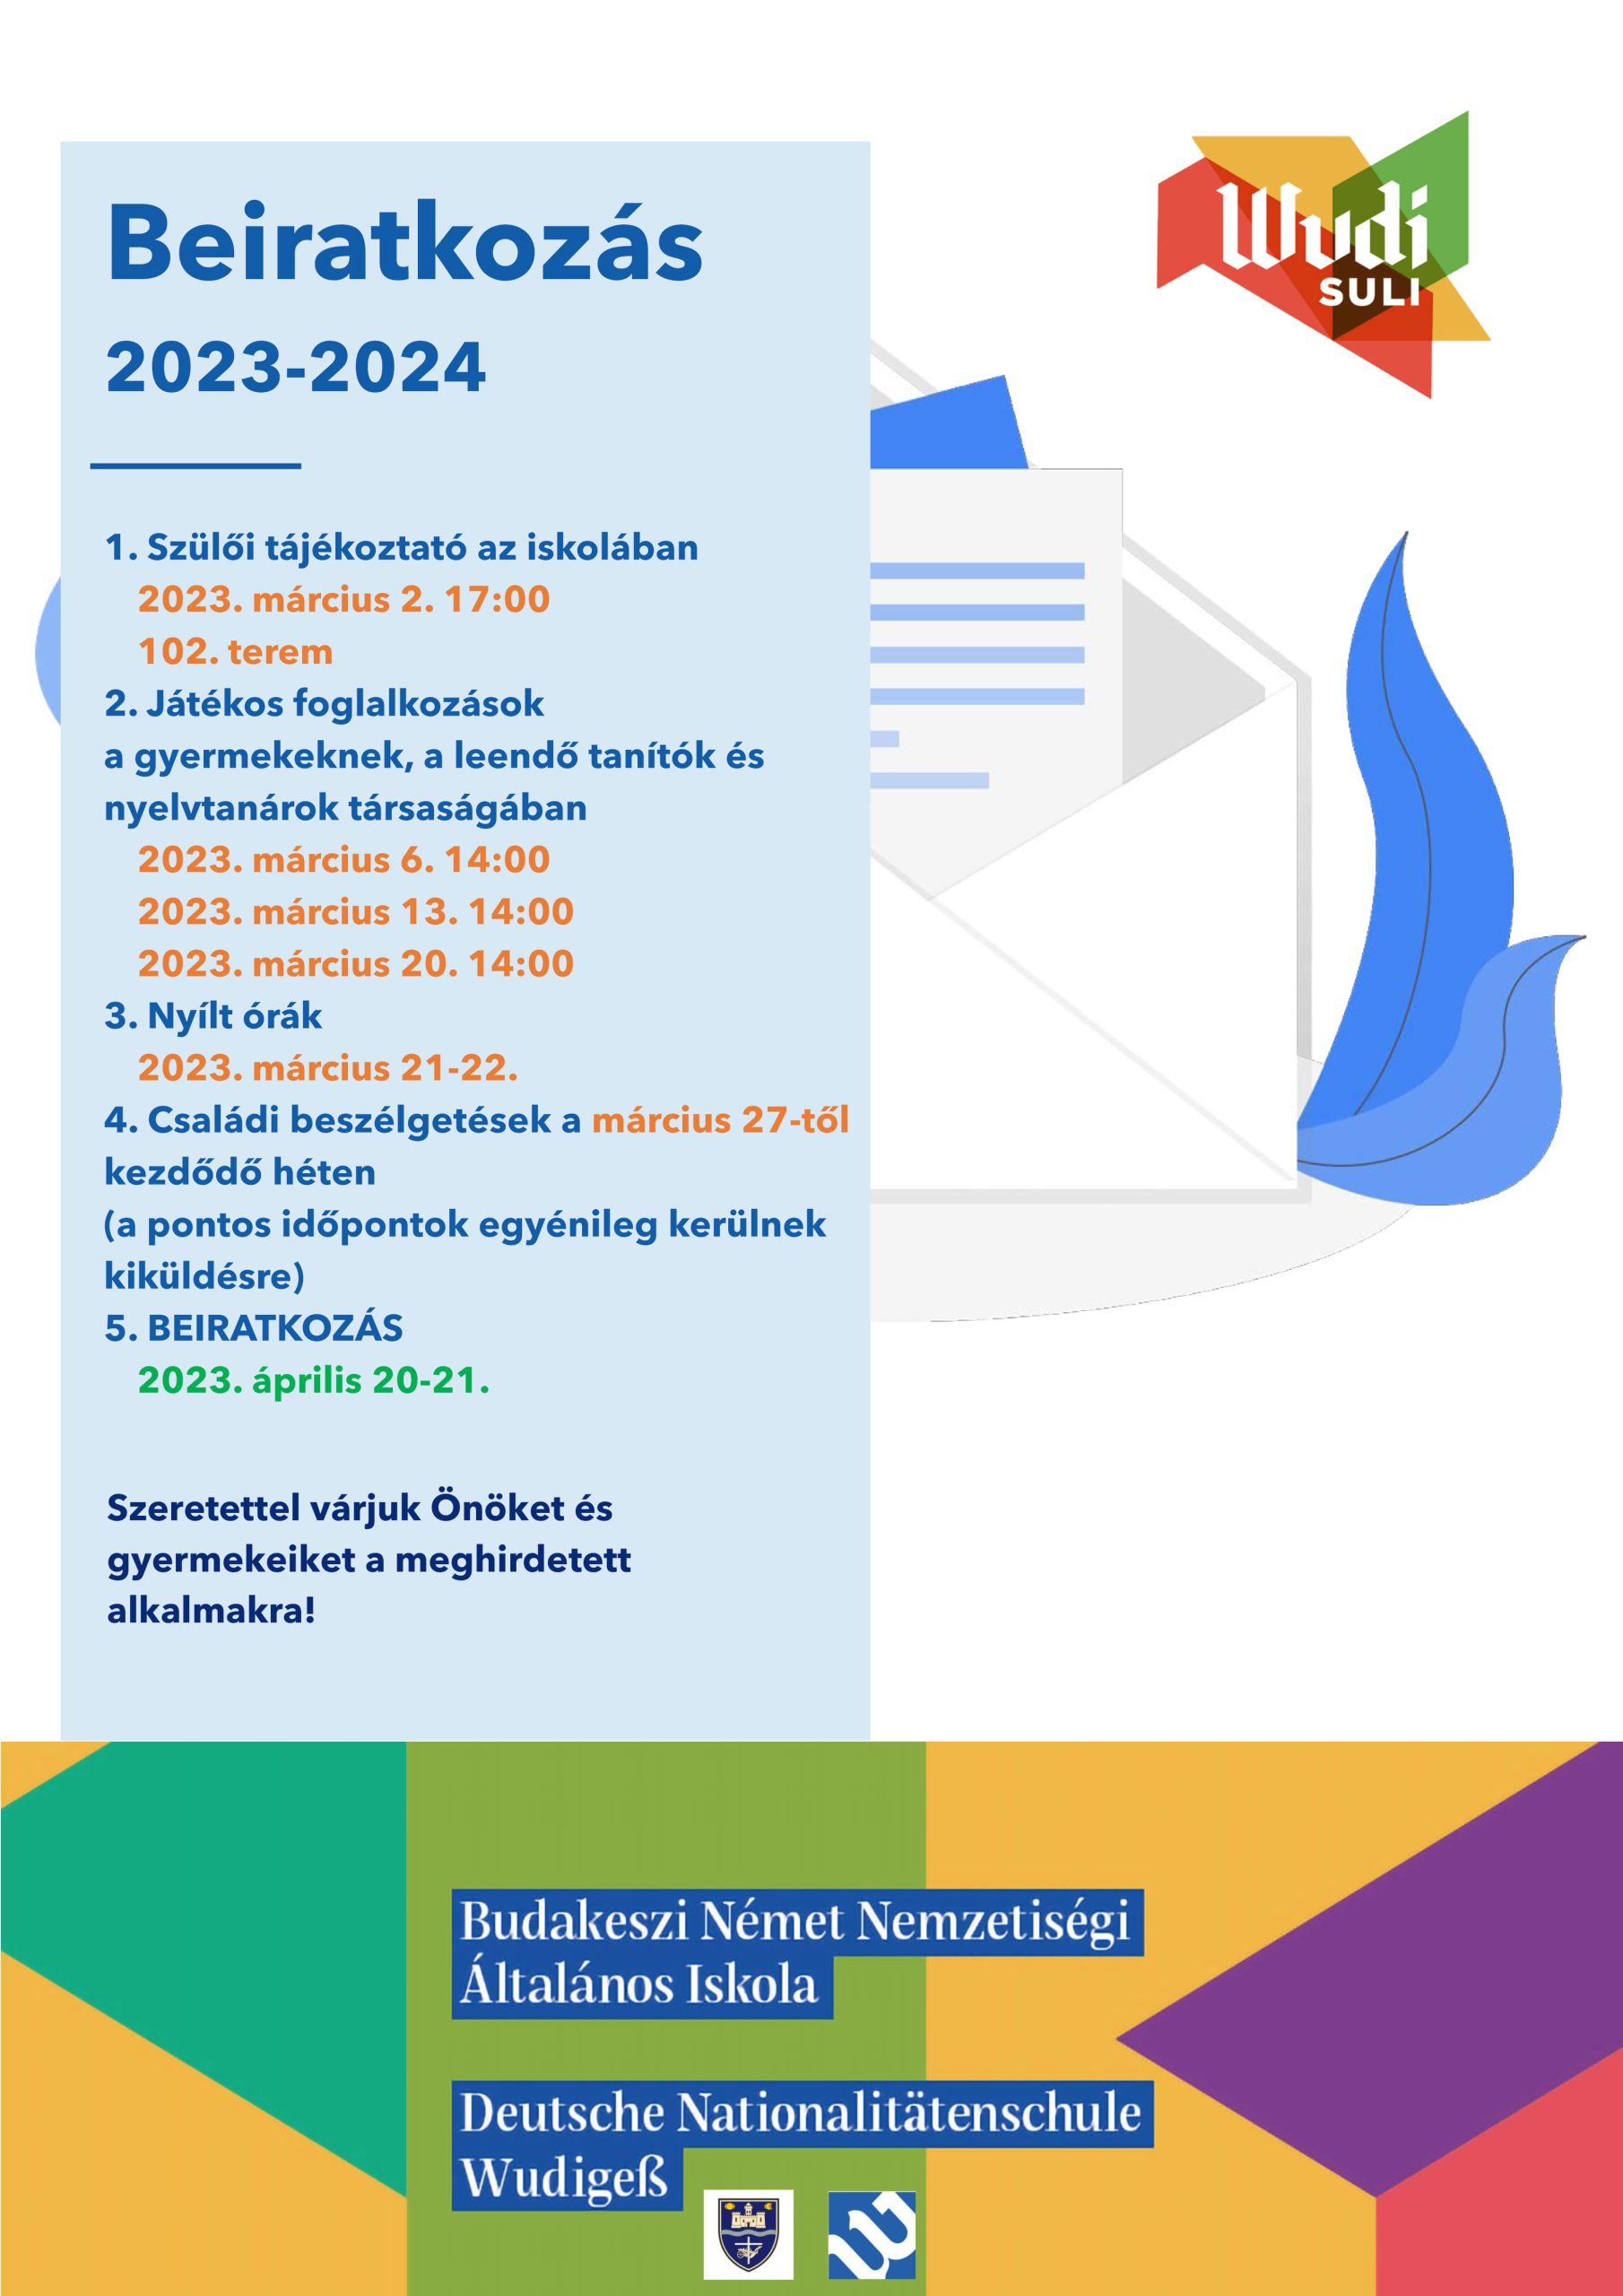 WudiSuli | Beiratkozás 2023-2024